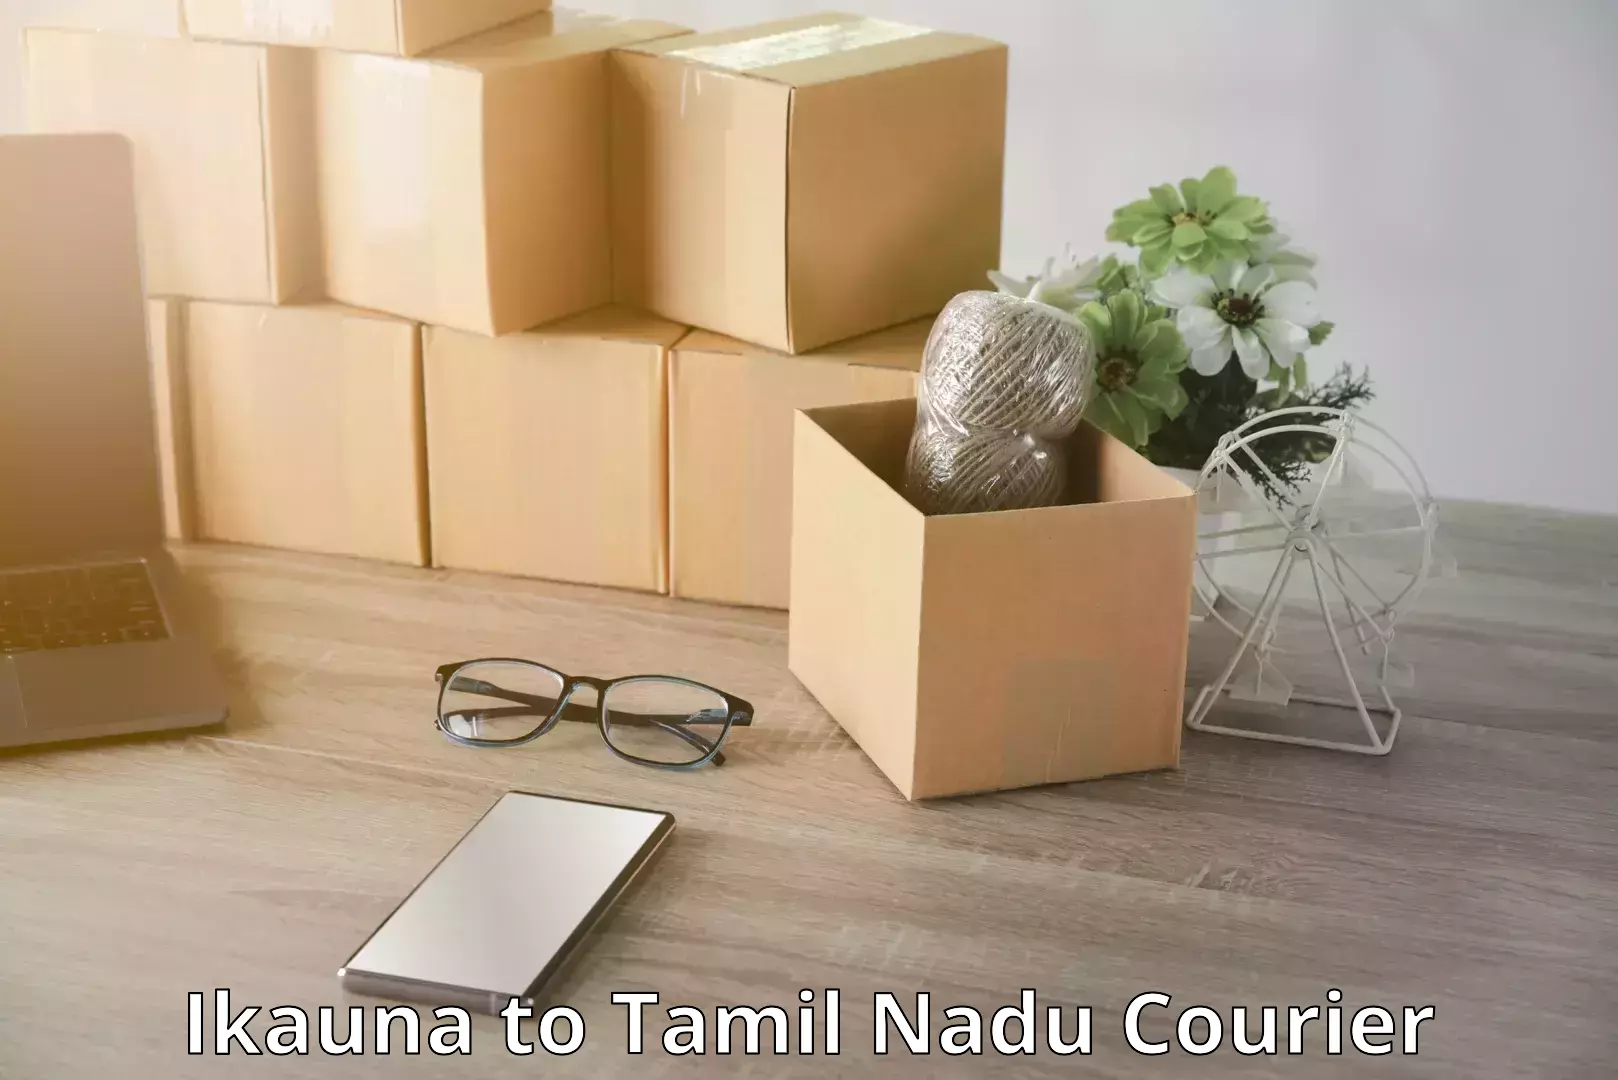 Luggage shipment logistics Ikauna to Tamil Nadu